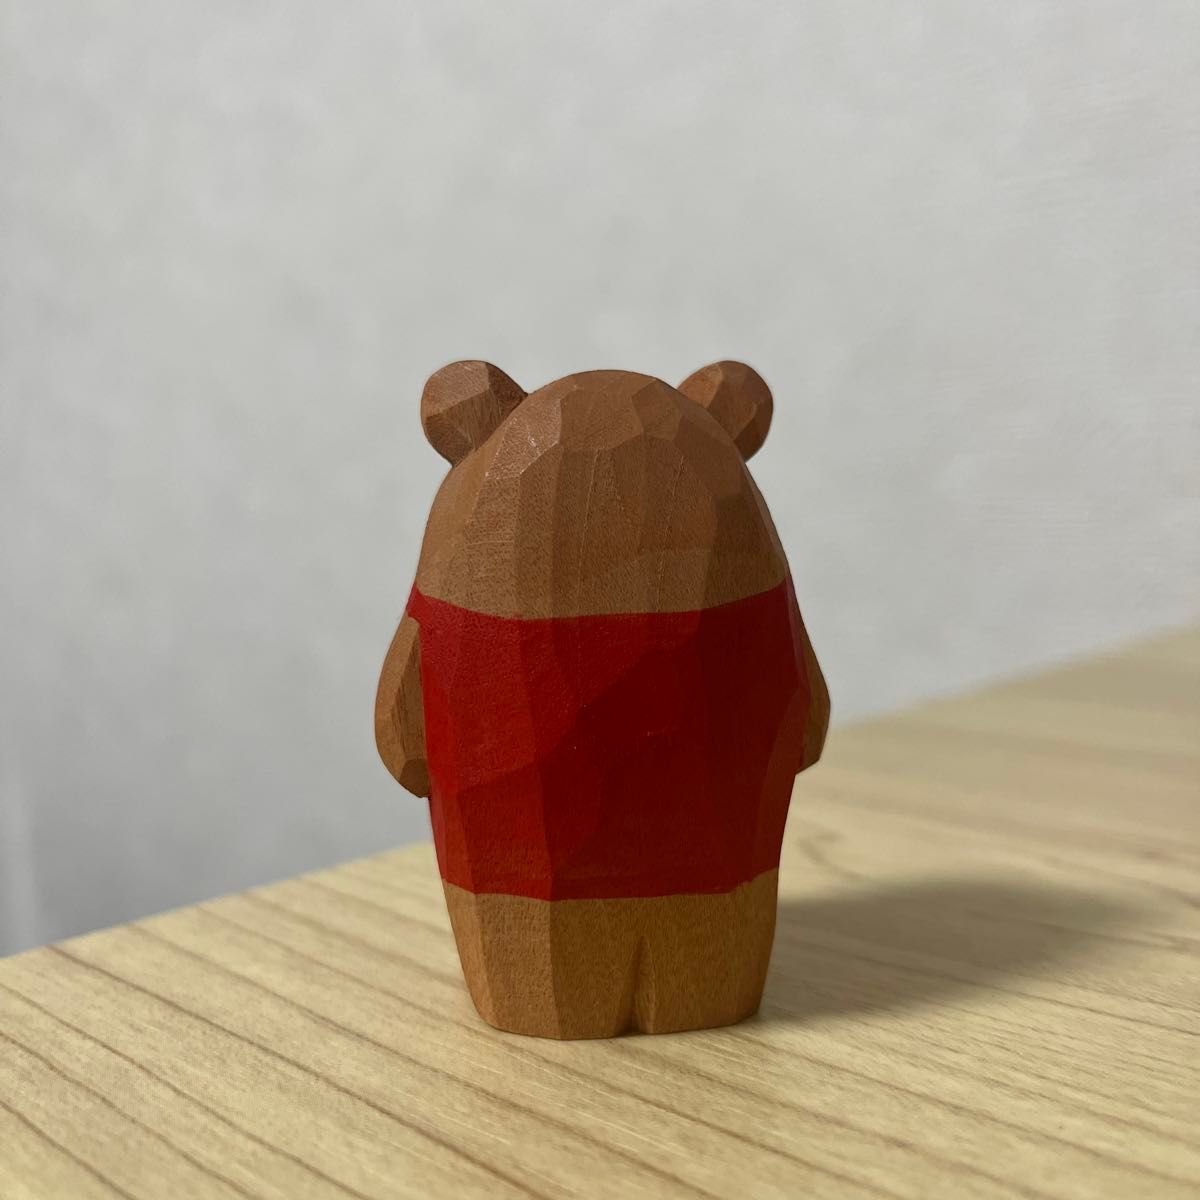 木彫り 熊 茶色 赤